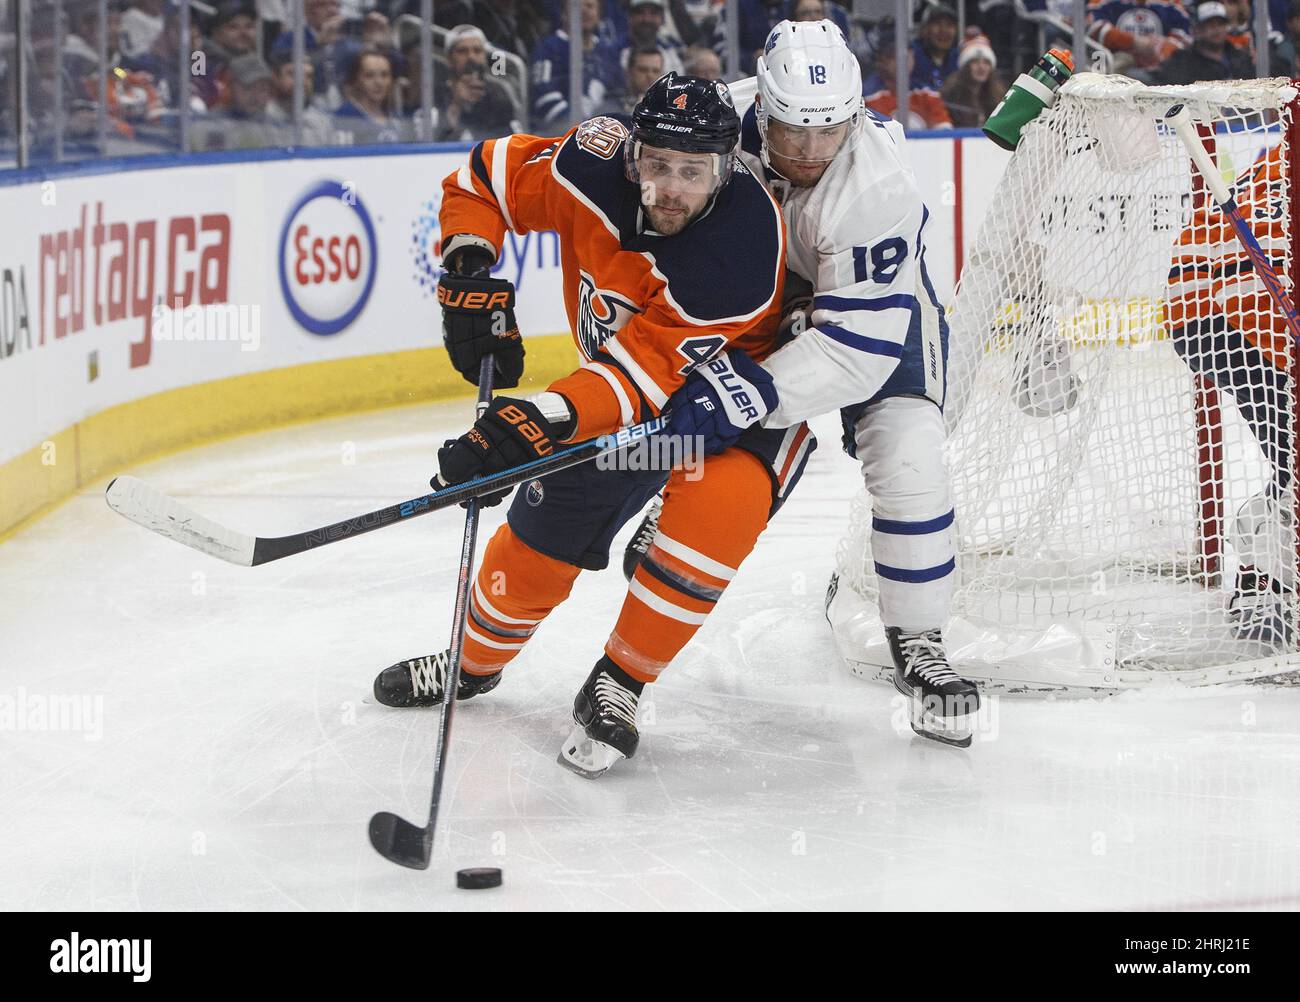 Andreas Johnsson (18) de Toronto Maple Leafs chase Edmonton Oilers Kris Russell (4) lors de la première période d'action de la LNH à Edmonton, le samedi 9 mars 2019. LA PRESSE CANADIENNE/Jason Franson Banque D'Images